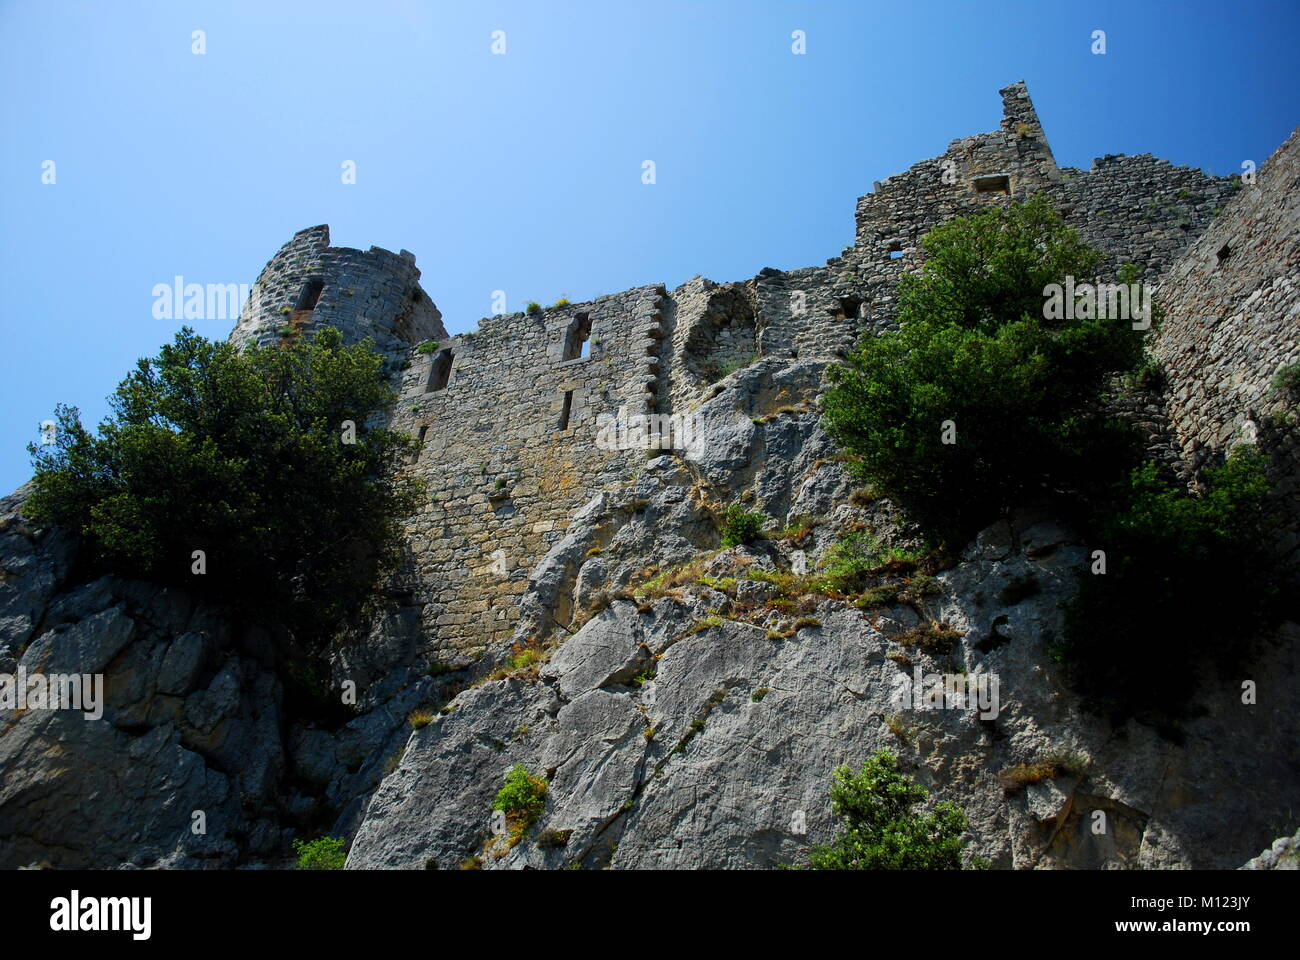 L'intérieur le château de Puilaurens dans le sud de la France, construit par les Cathares qui a suivi une version gnostique du christianisme. Elles sont considérées par beaucoup d'altern Banque D'Images